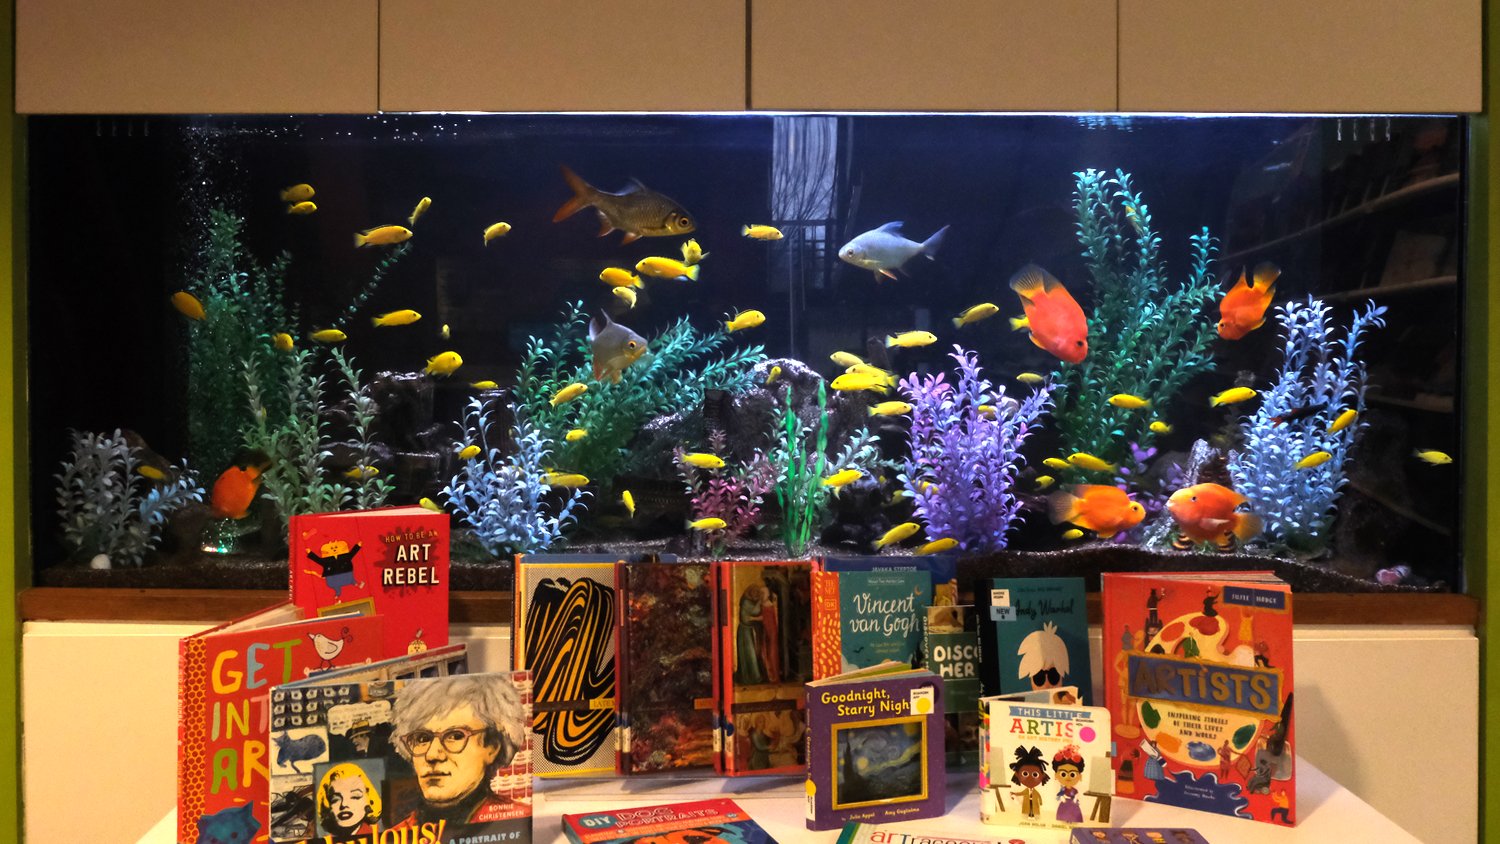 Aquarium and display table.